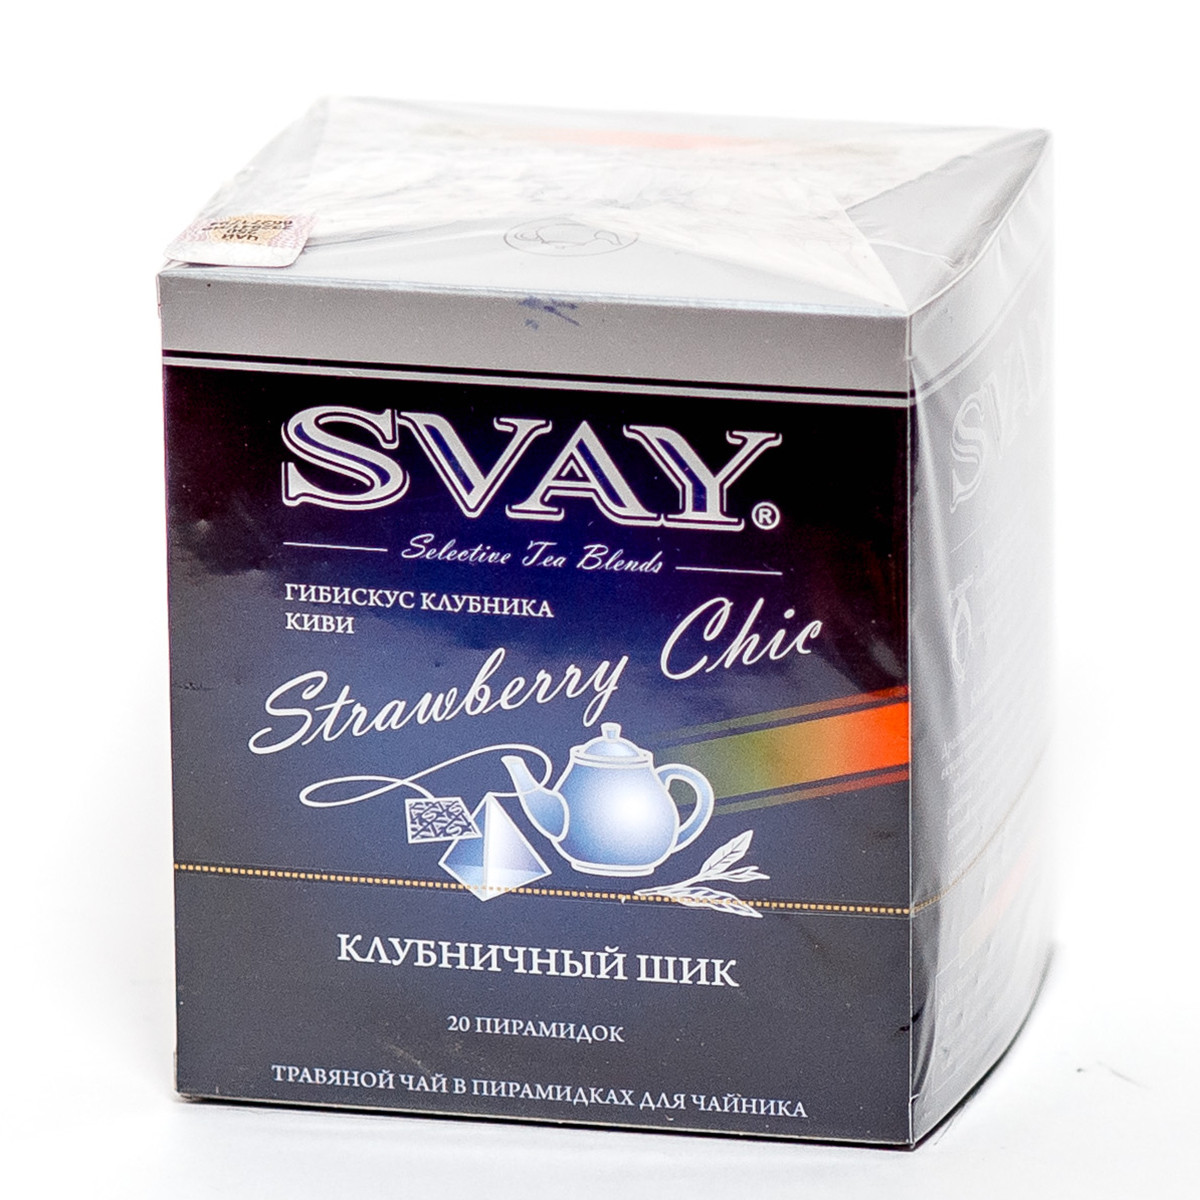 Чай "Svay Strawberry Chic", ТМ "SVAY" чай цветочный каркаде с клубникой и киви (пакетированный пирамидка 20х5